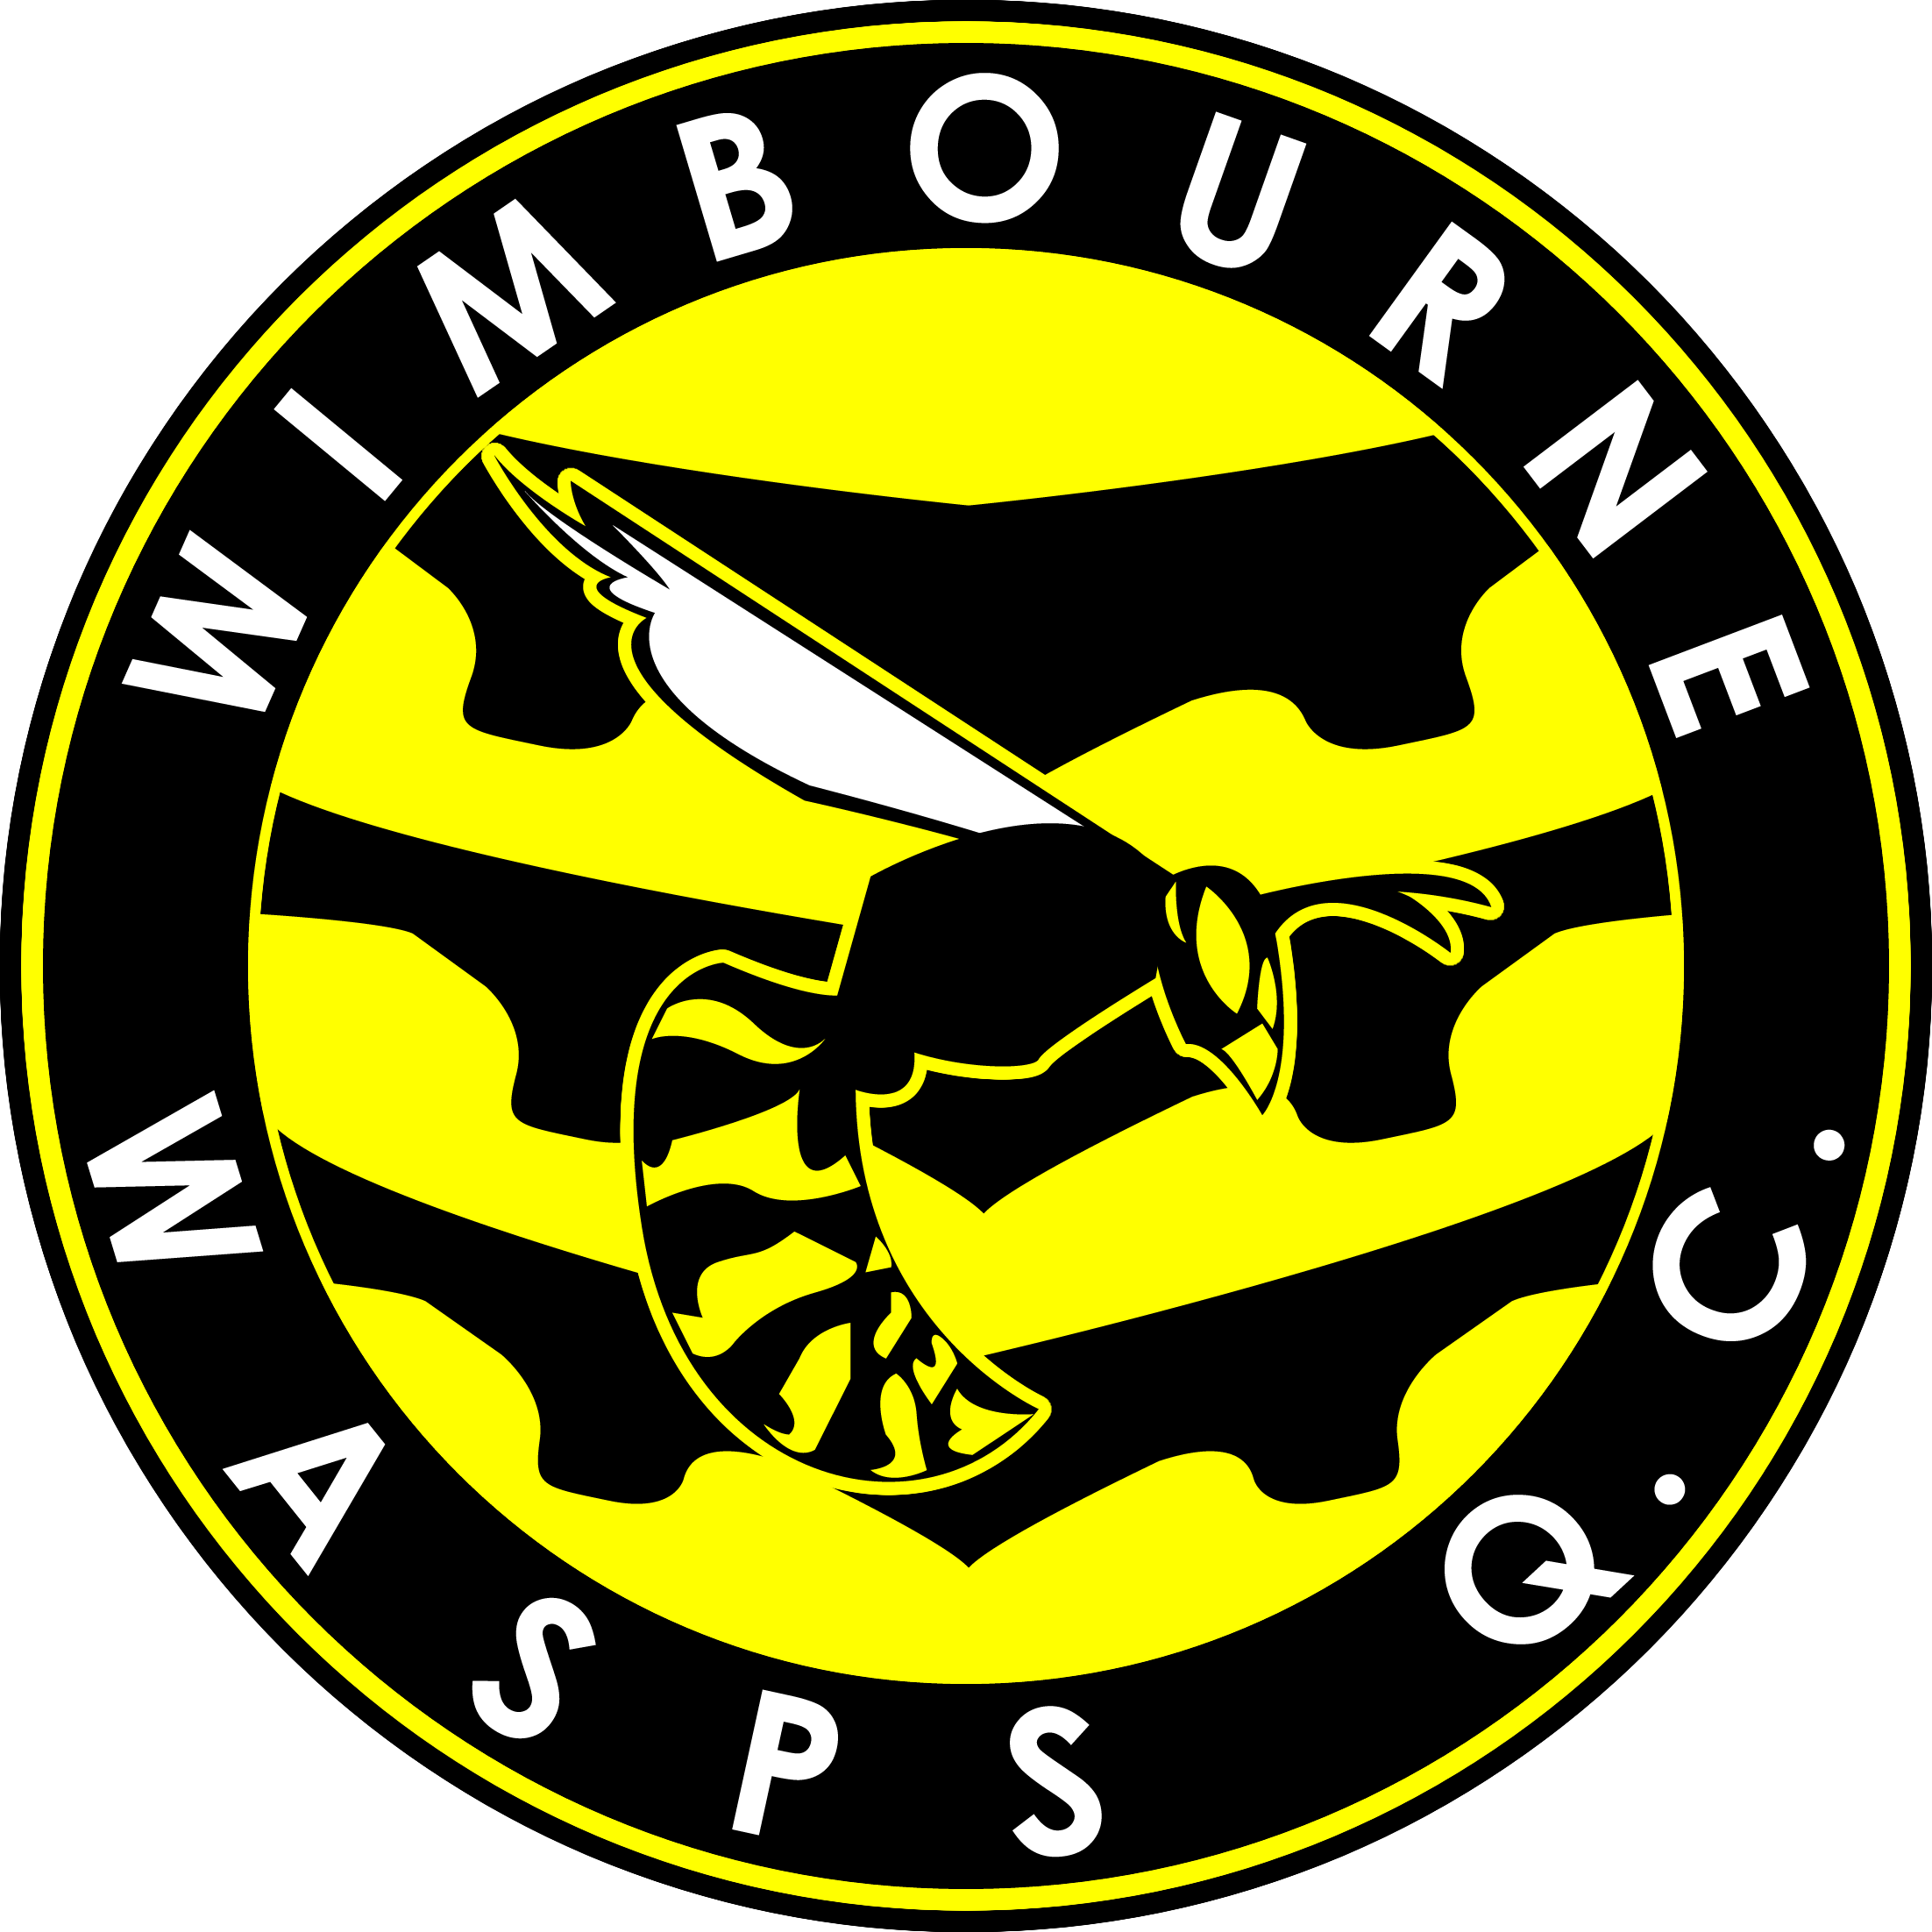 Wimbourne Wasps logo 1